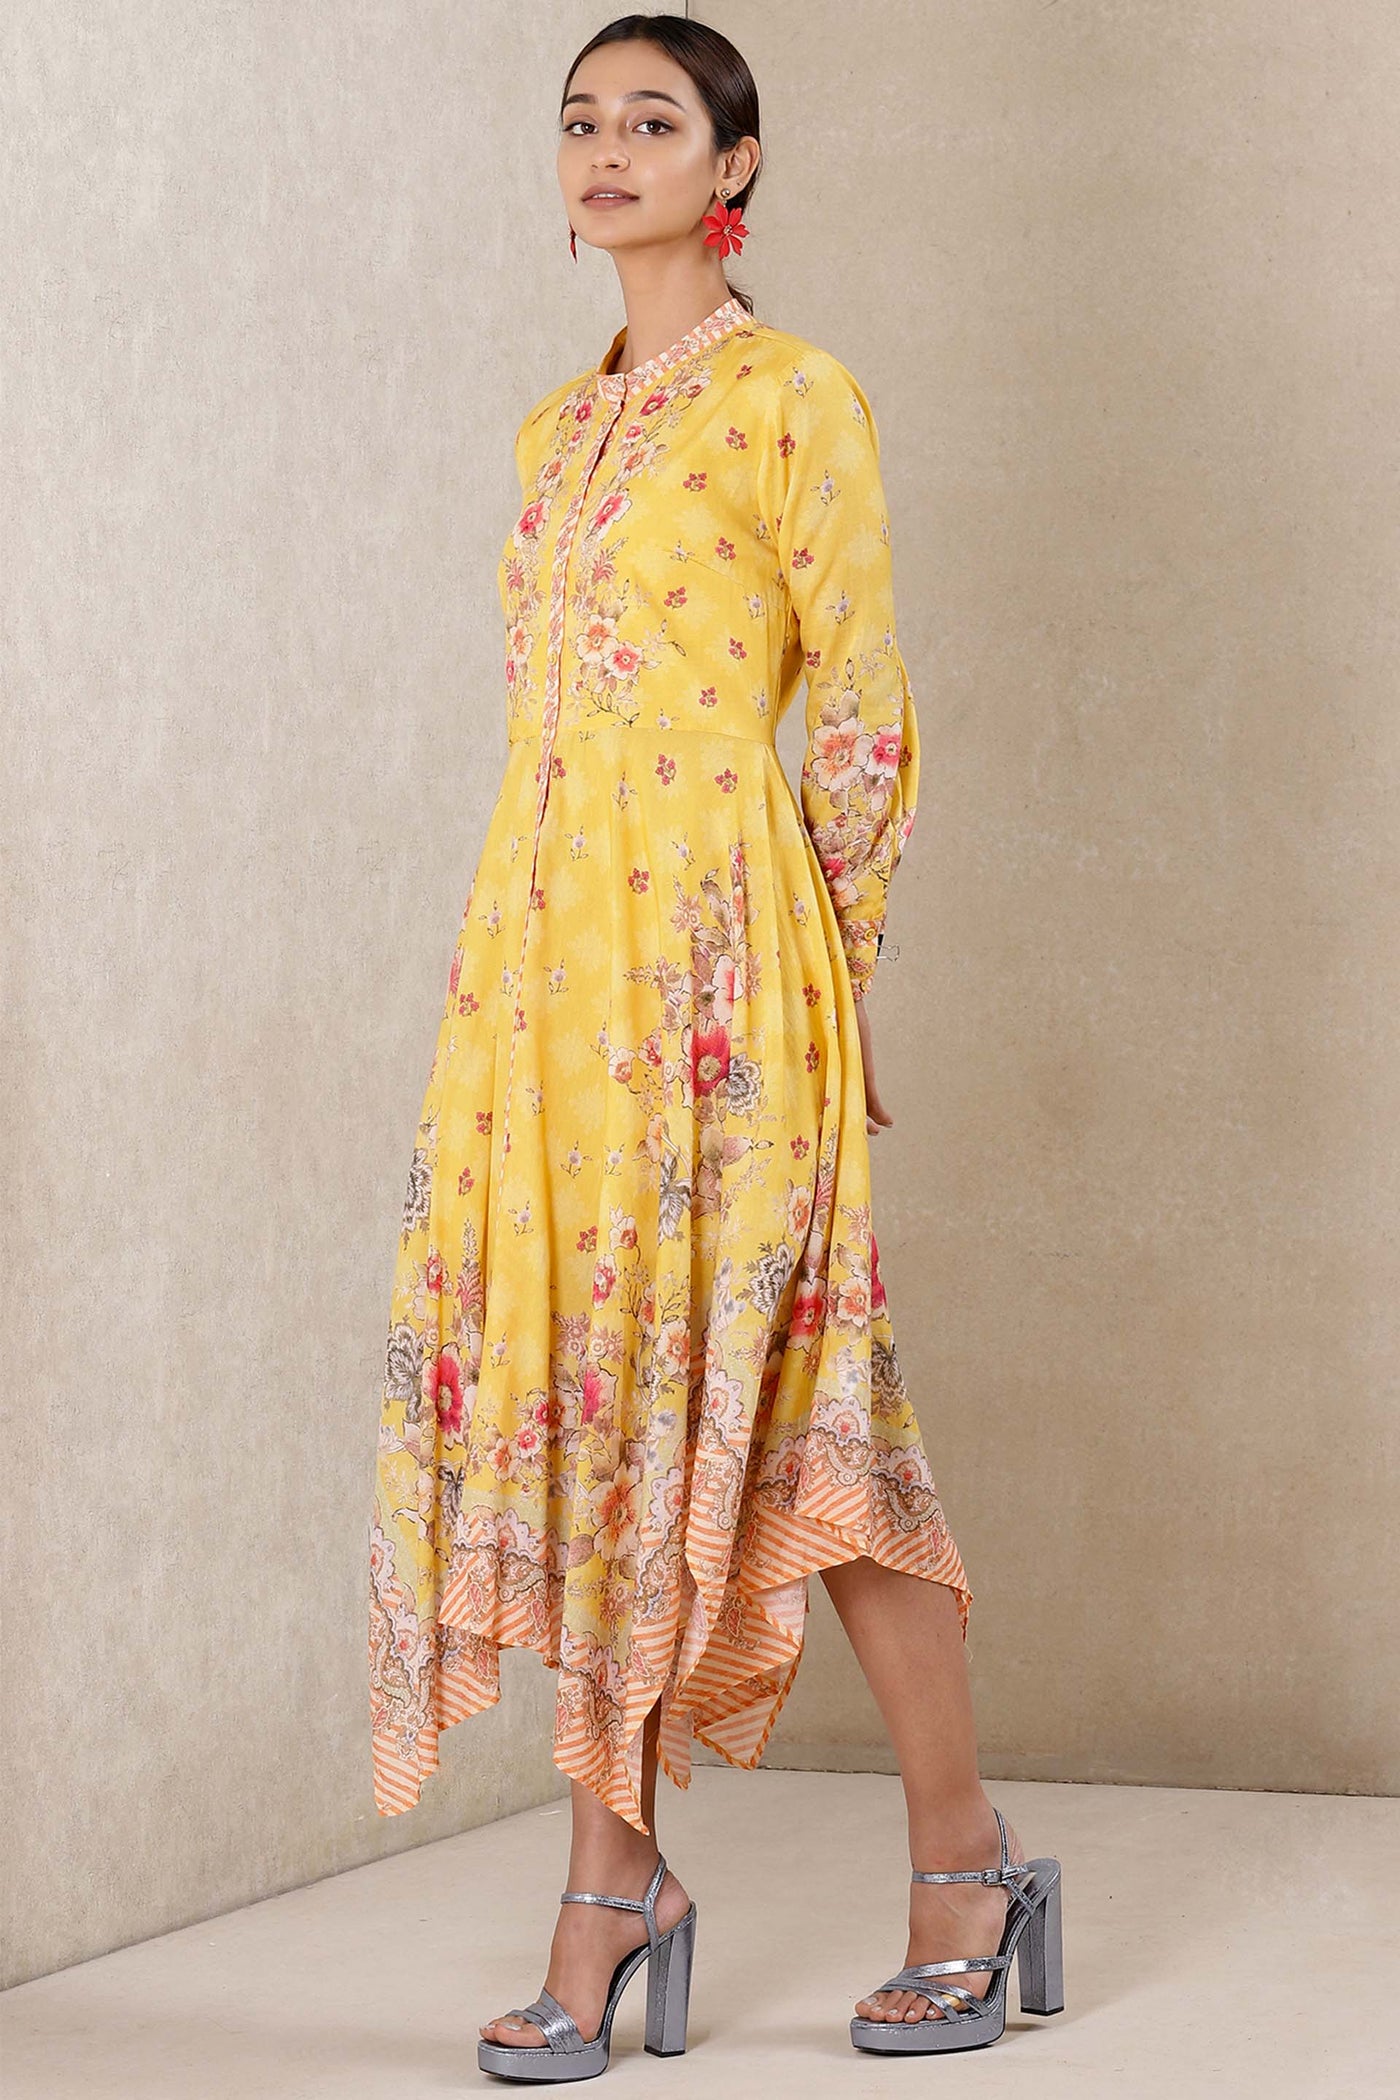 Ritu kumar Round neck full sleeves printed long dress yellow western indian designer wear online shopping melange singapore